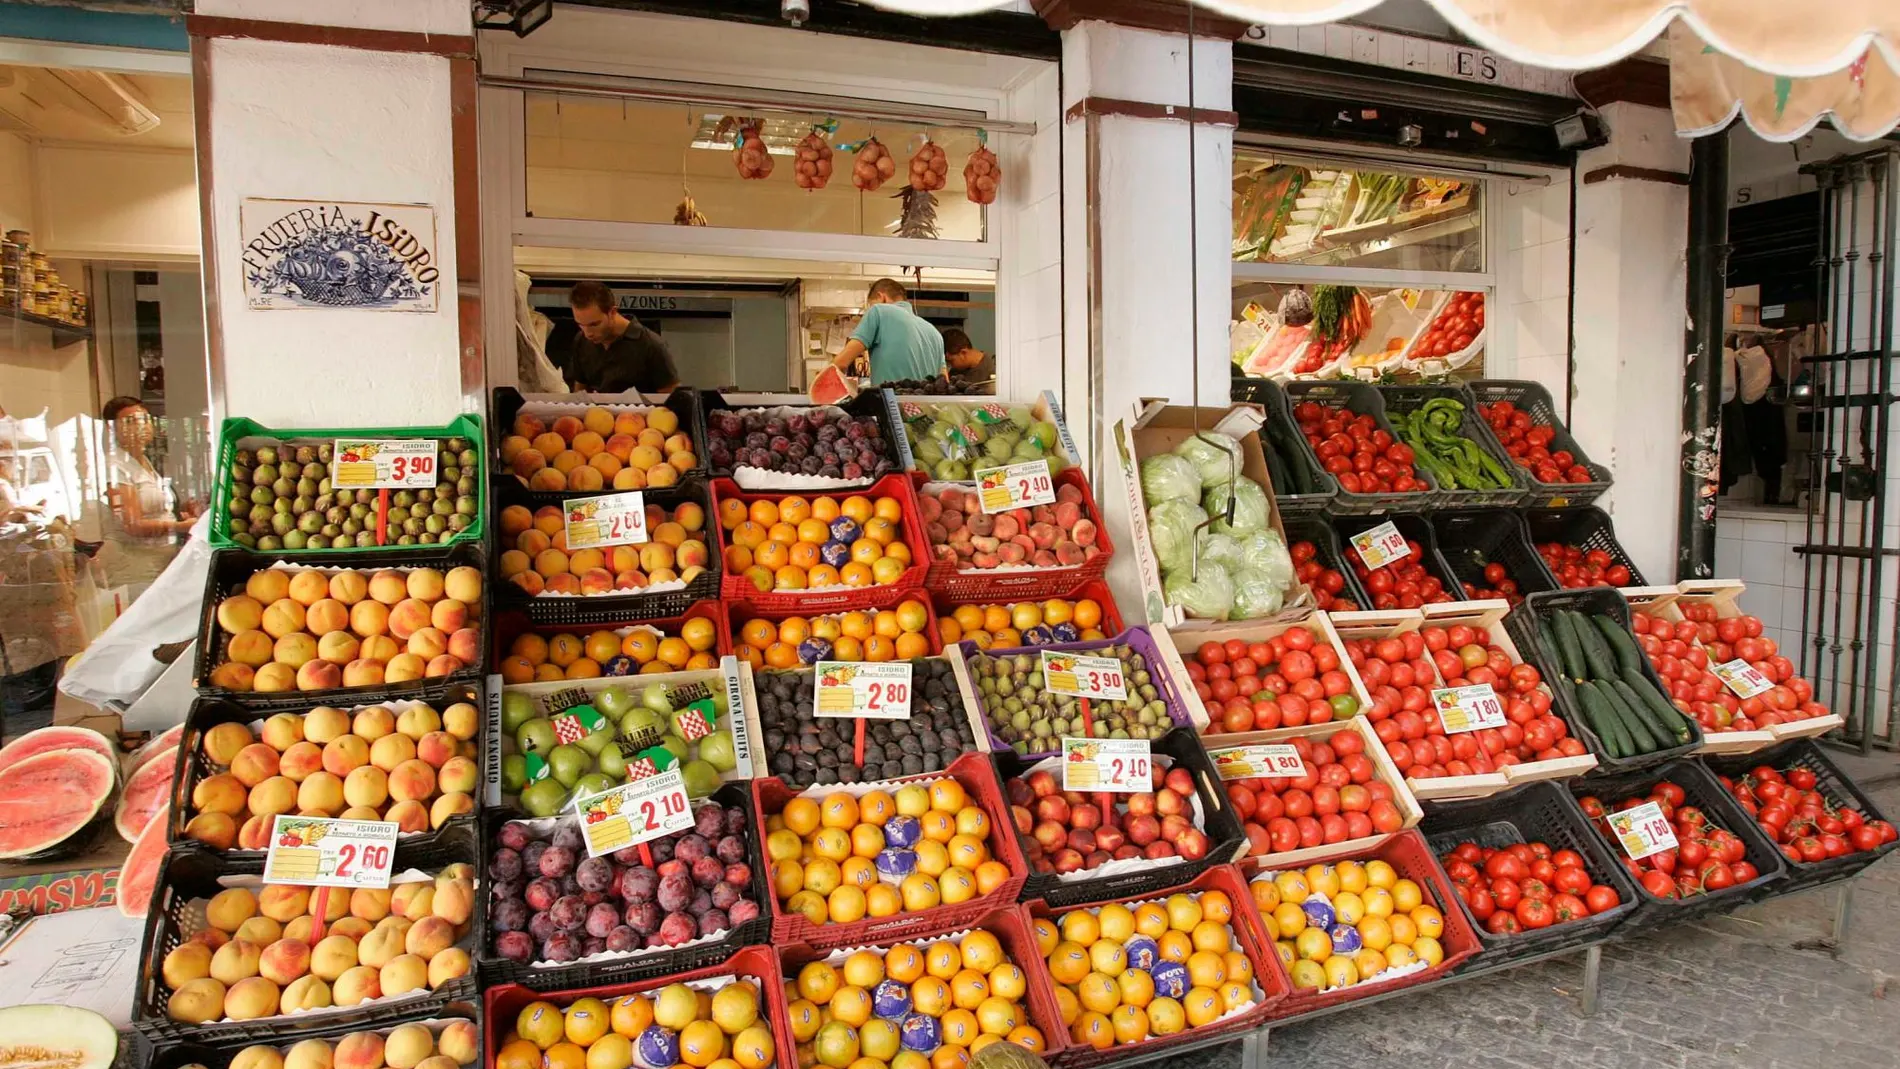 Lo que más exportan las empresas andaluzas al Reino Unido son frutas frescas / Manuel Olmedo